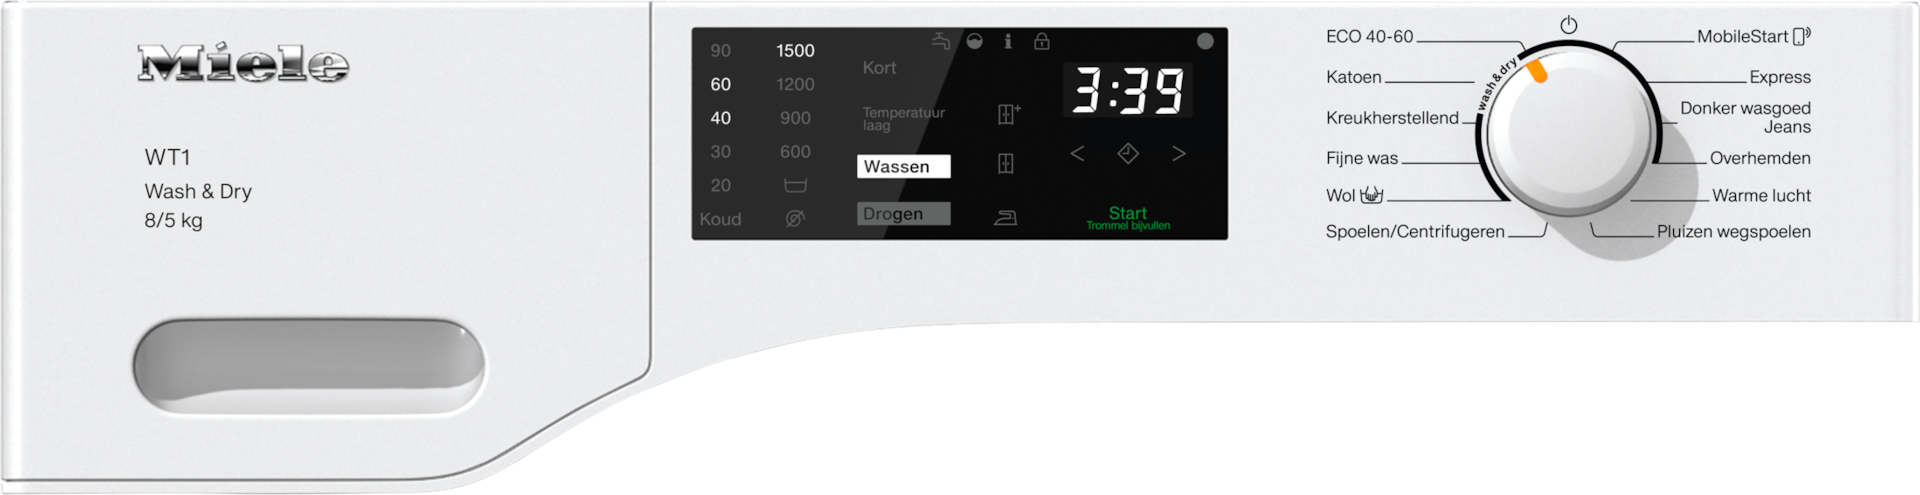 Wasautomaten - WTD160 WCS 8/5 kg Lotuswit - 2